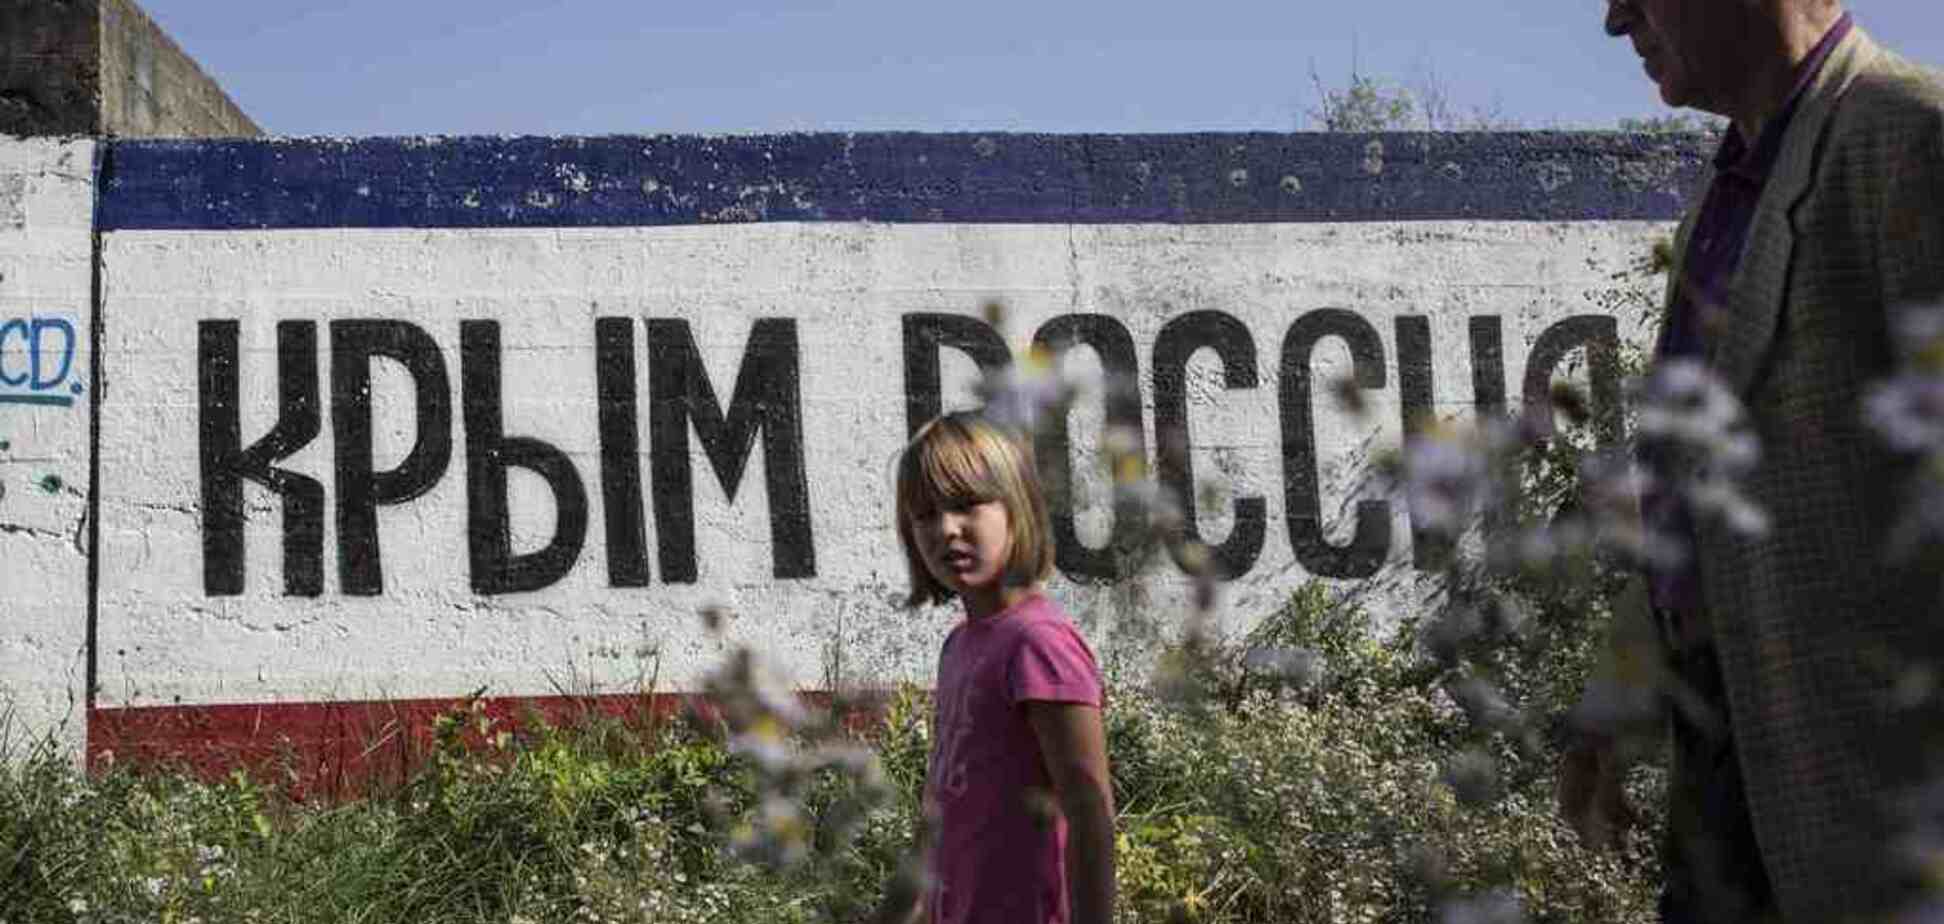 Хуже с каждым днем: фанат Путина на фото показал, до чего Россия довела Крым